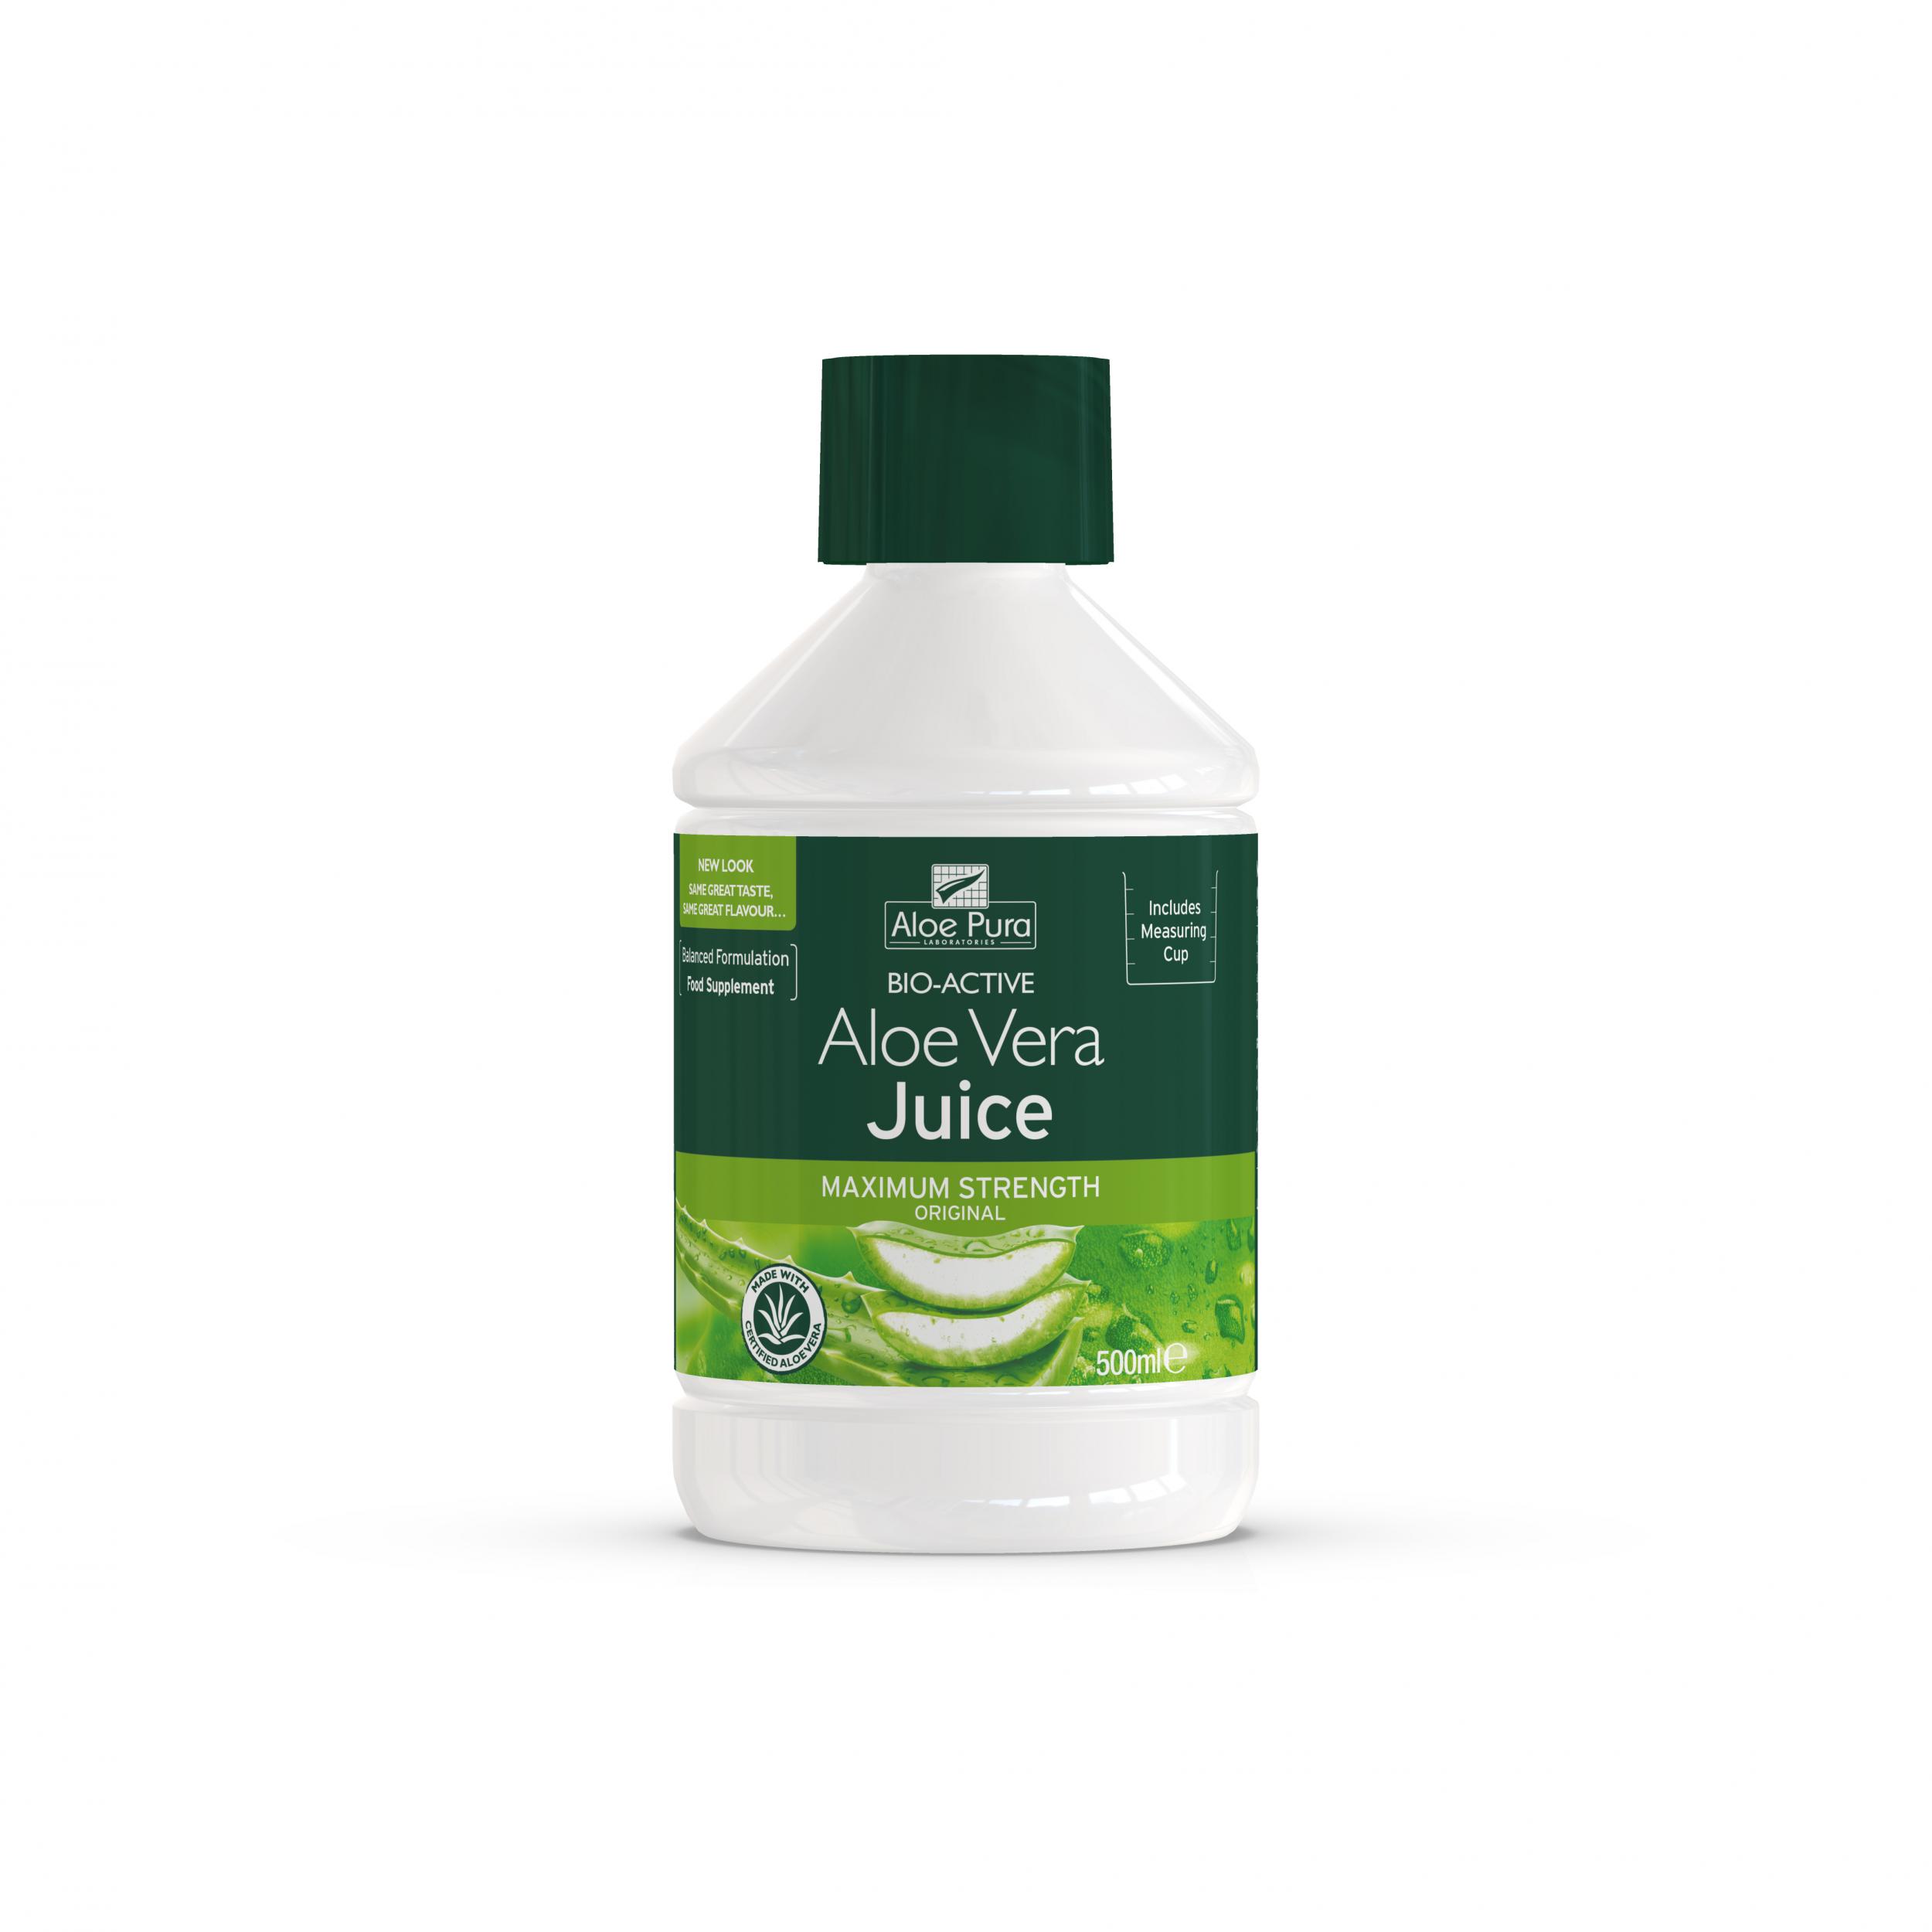 Bio-Active Aloe Vera Juice Maximum Strength Original 500ml